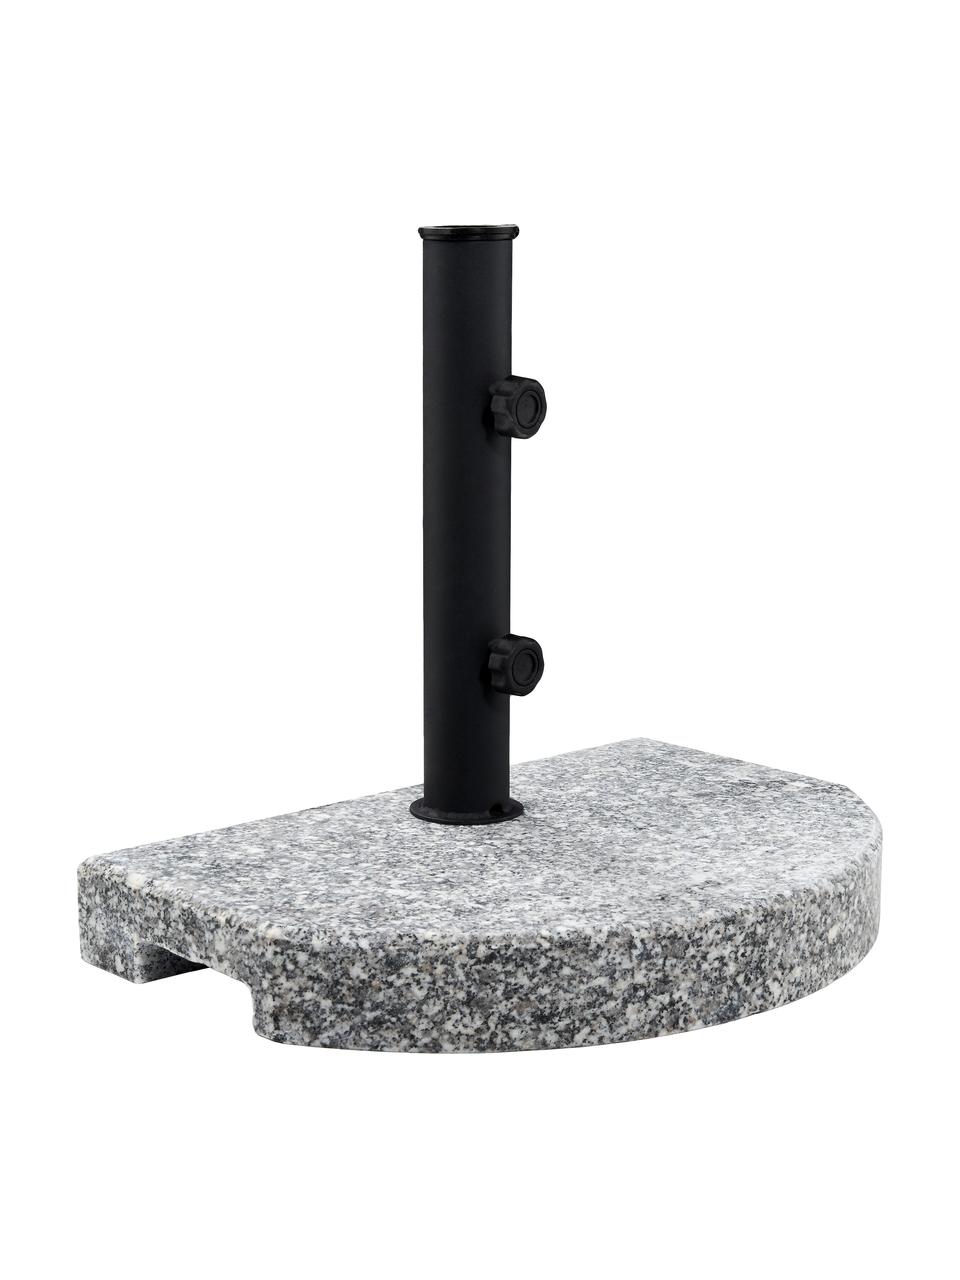 Parapluhouder The Rock, Graniet, gecoat staal, Grijs, zwart, 40 x 33 cm